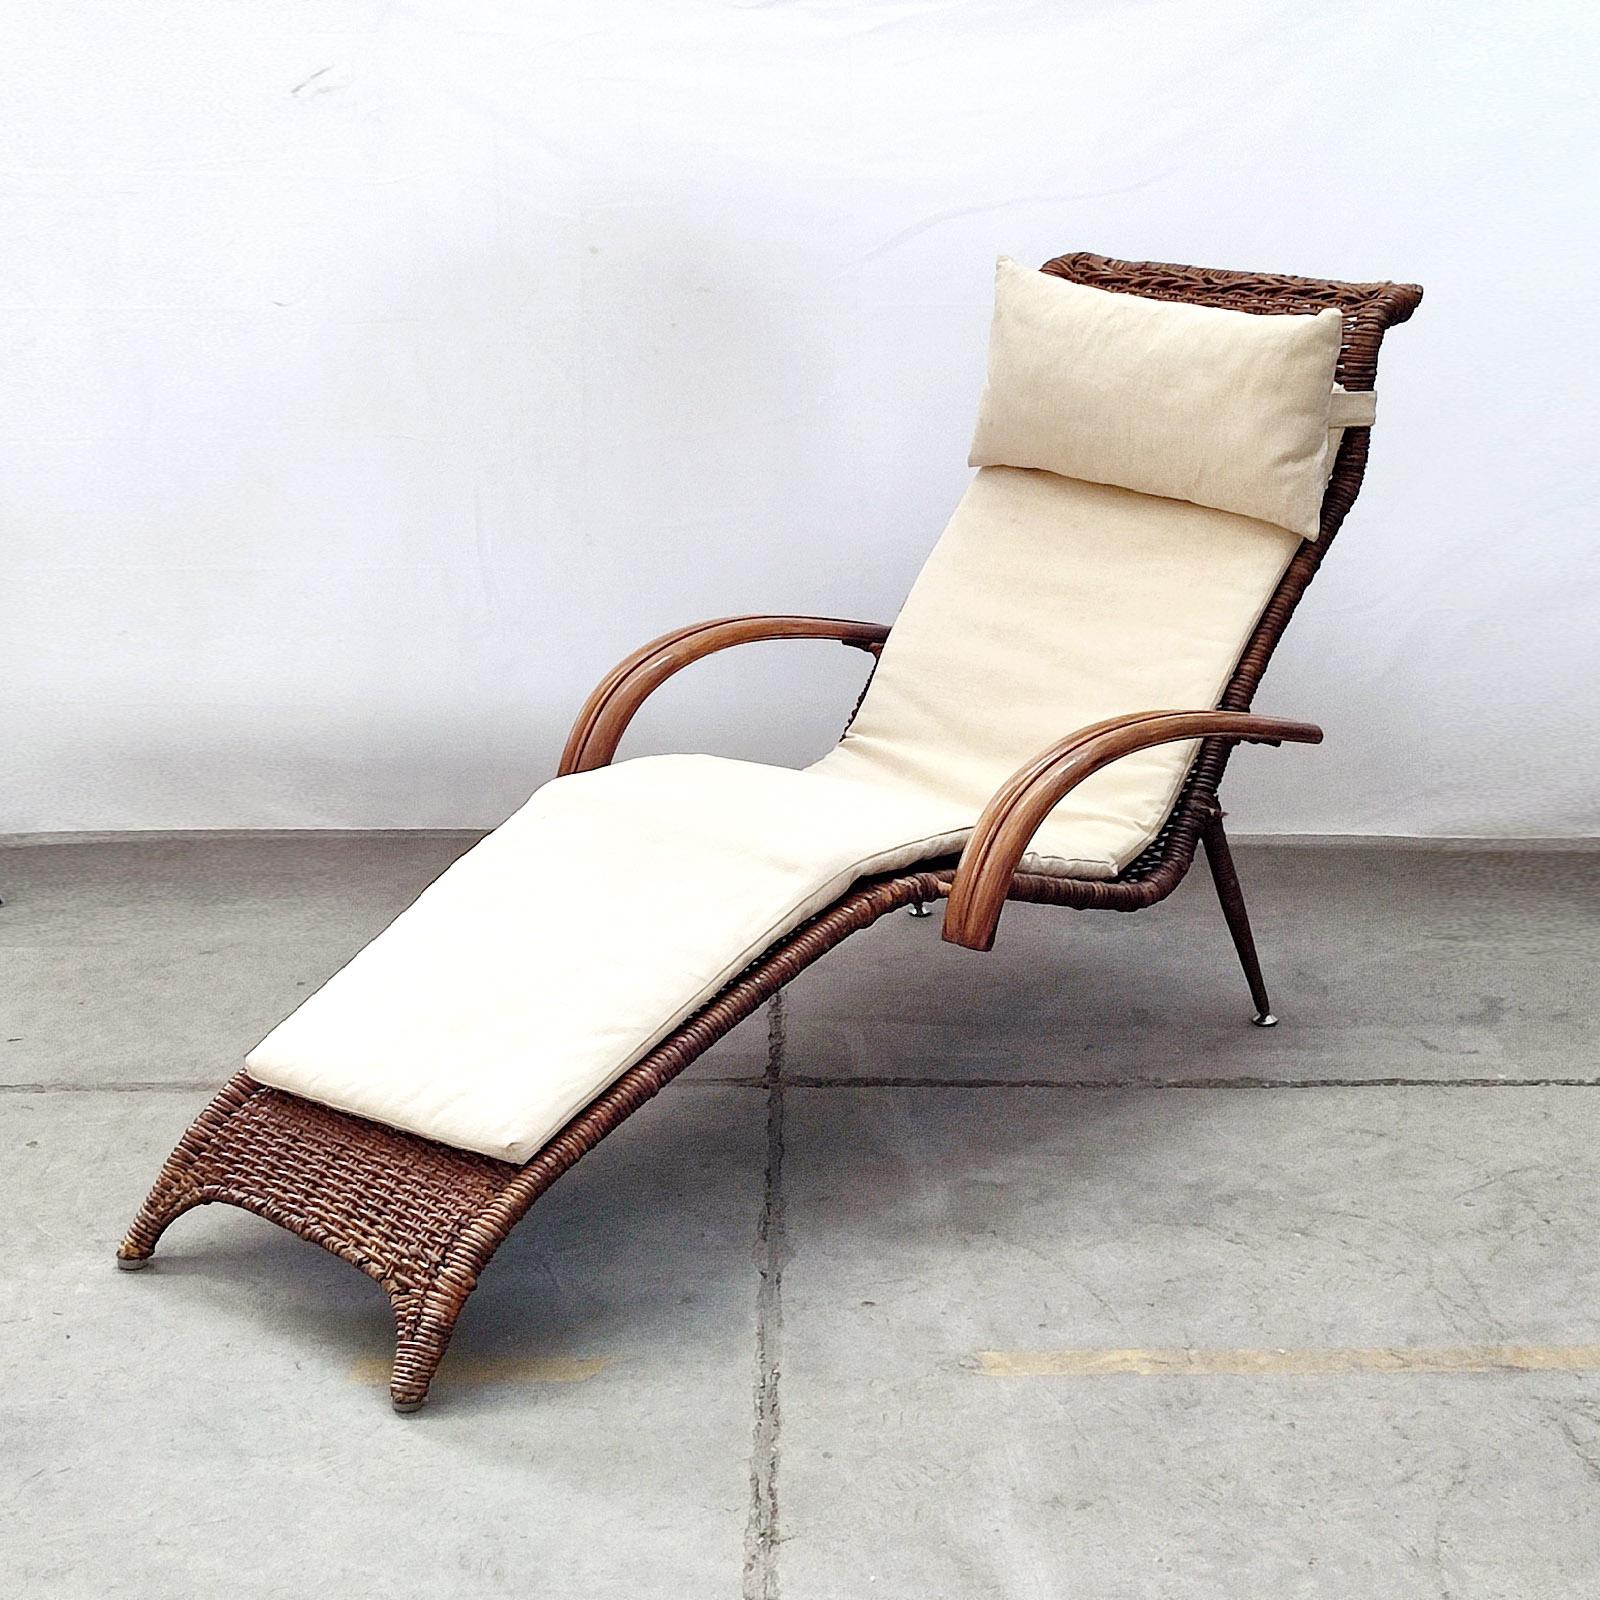 Skulpturaler italienischer Rattan- und Bambus-Chaiselongue-Sessel aus der Mitte des Jahrhunderts mit Matratze und Kopfstützenkissen in weißen Leinenbezügen.
Eine schöne, skulpturale Chaiselongue aus einem soliden Metallrahmen mit geflochtenem Rohr